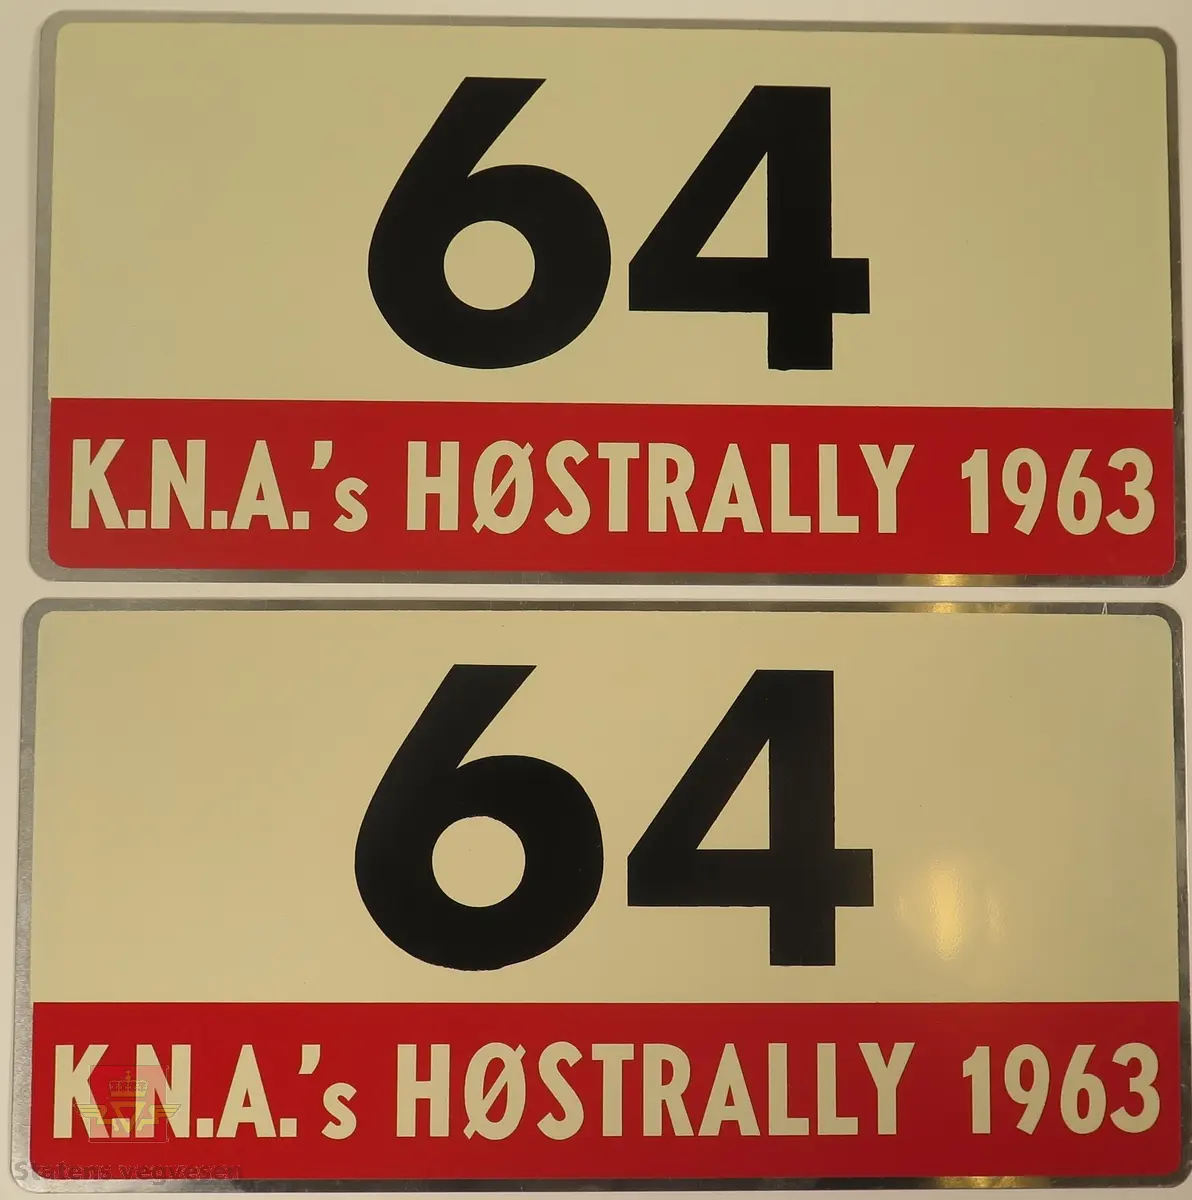 Hovedsakelig hvite metallskilt med et mindre rødt markeringsområde. Grupperingen med skilt har også nummeret "64" påført seg, dette er en indikasjon på deltakernummer.
Påskrift: K.N.A.'s HØSTRALLY 1963